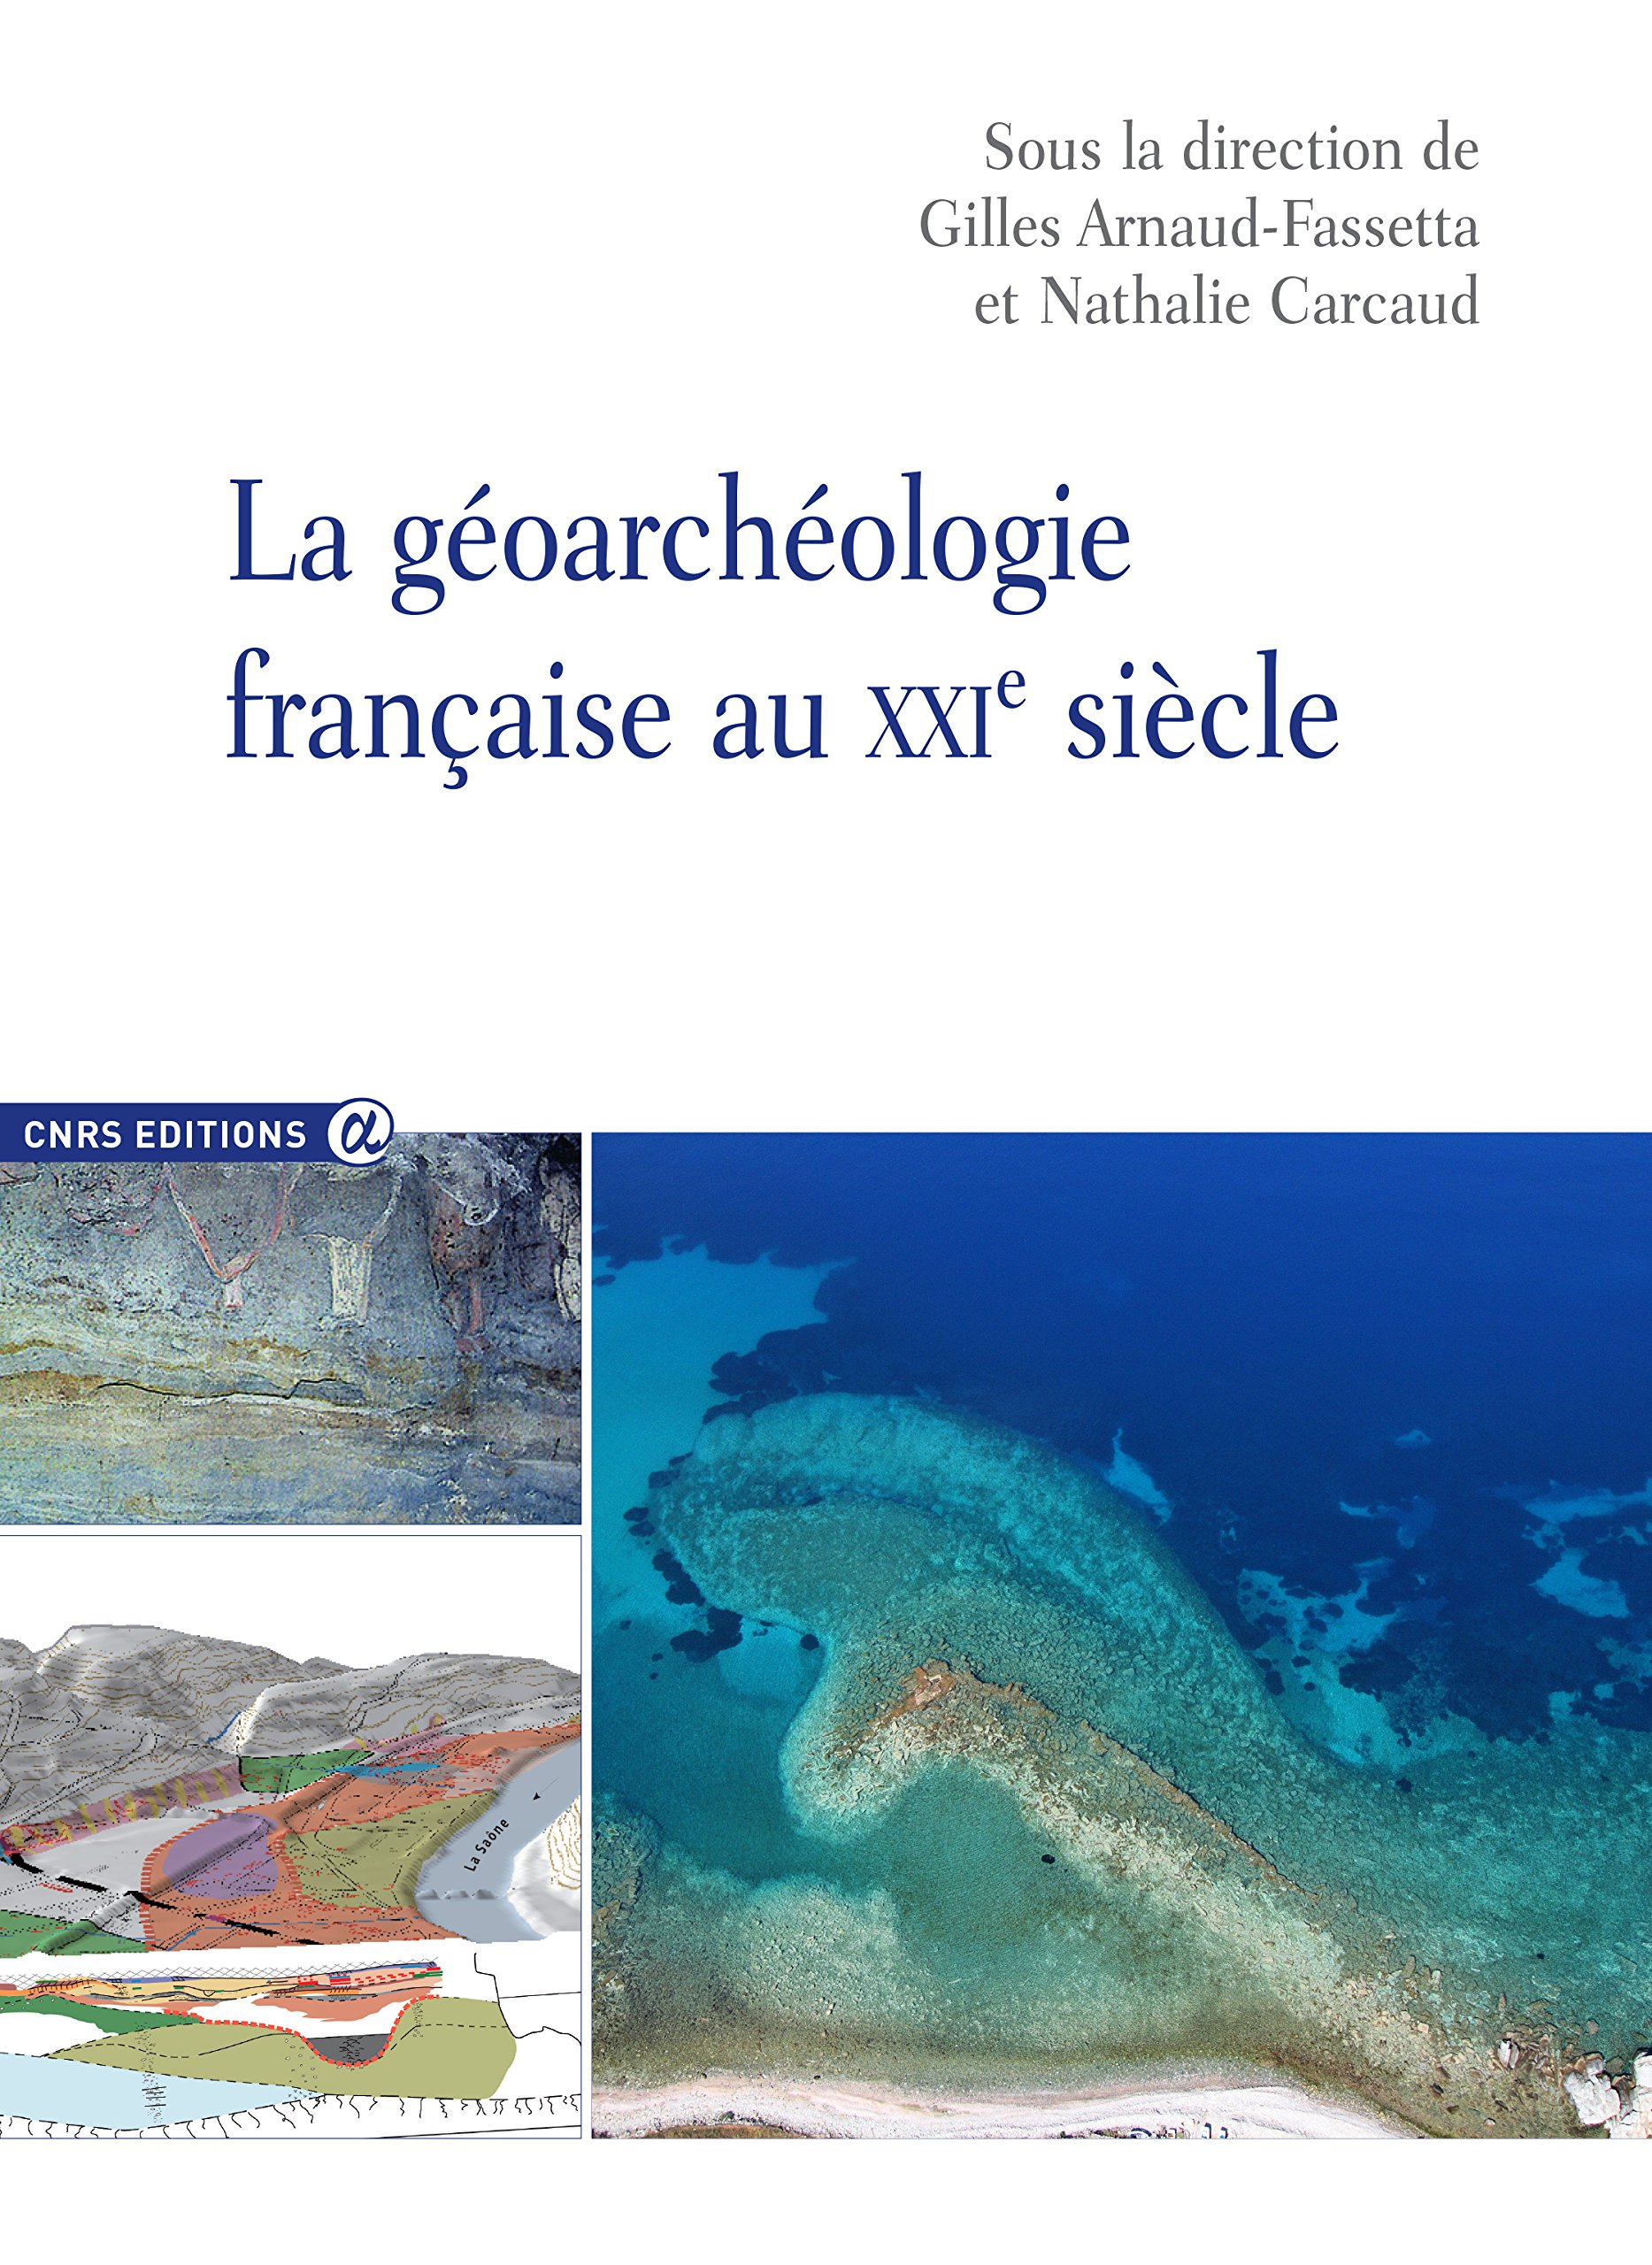 La géoarchéologie française au XXIe siècle, 2014, 620 p.